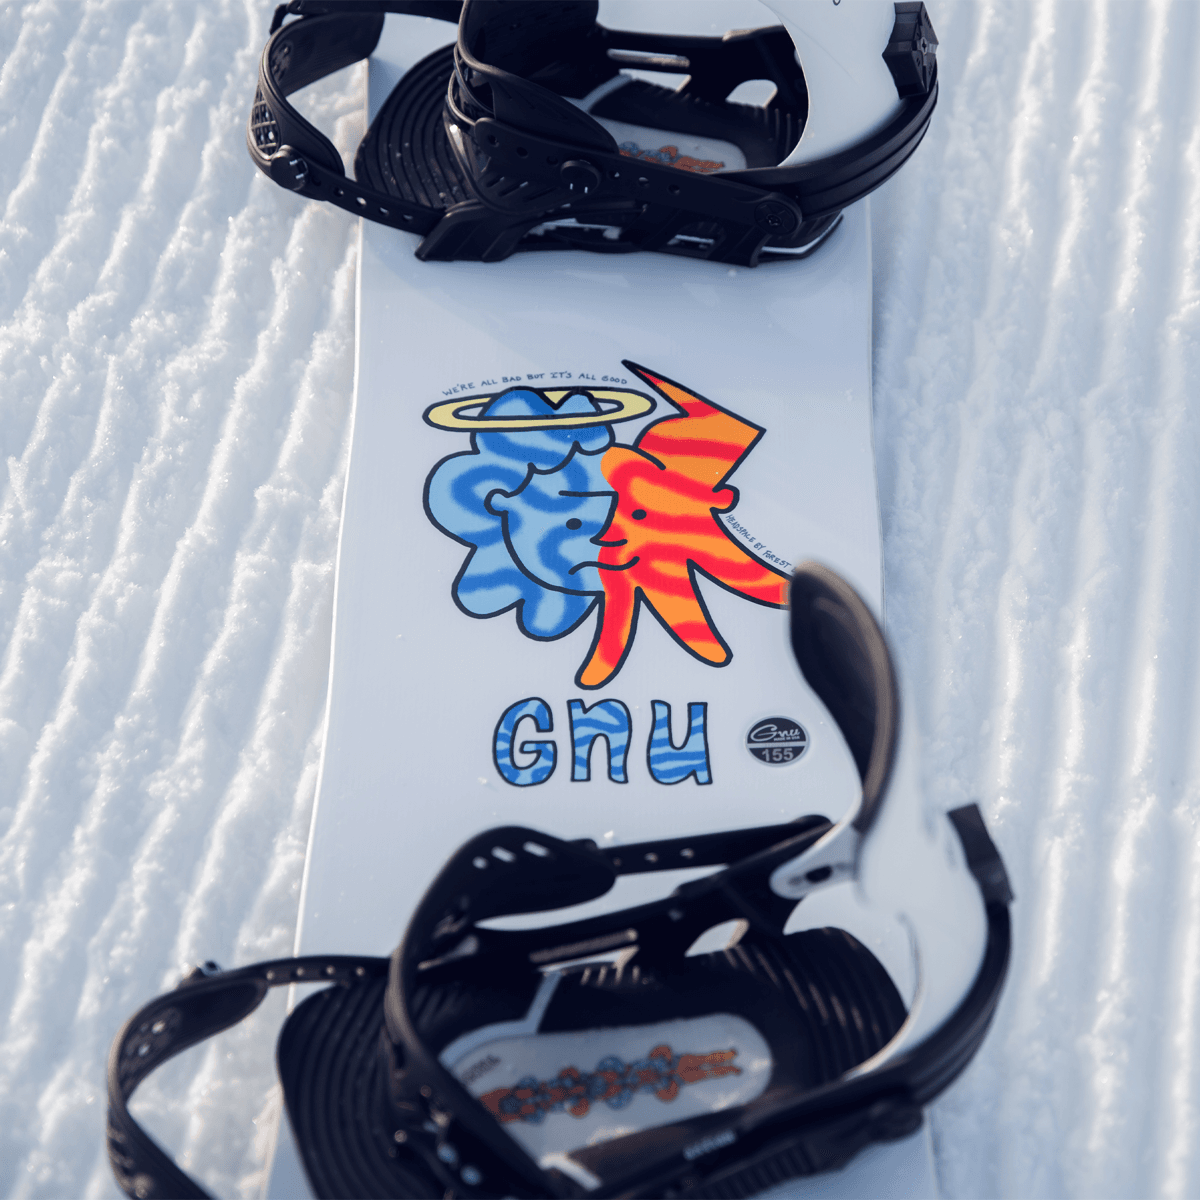 Gnu Headspace 23 Snowboard